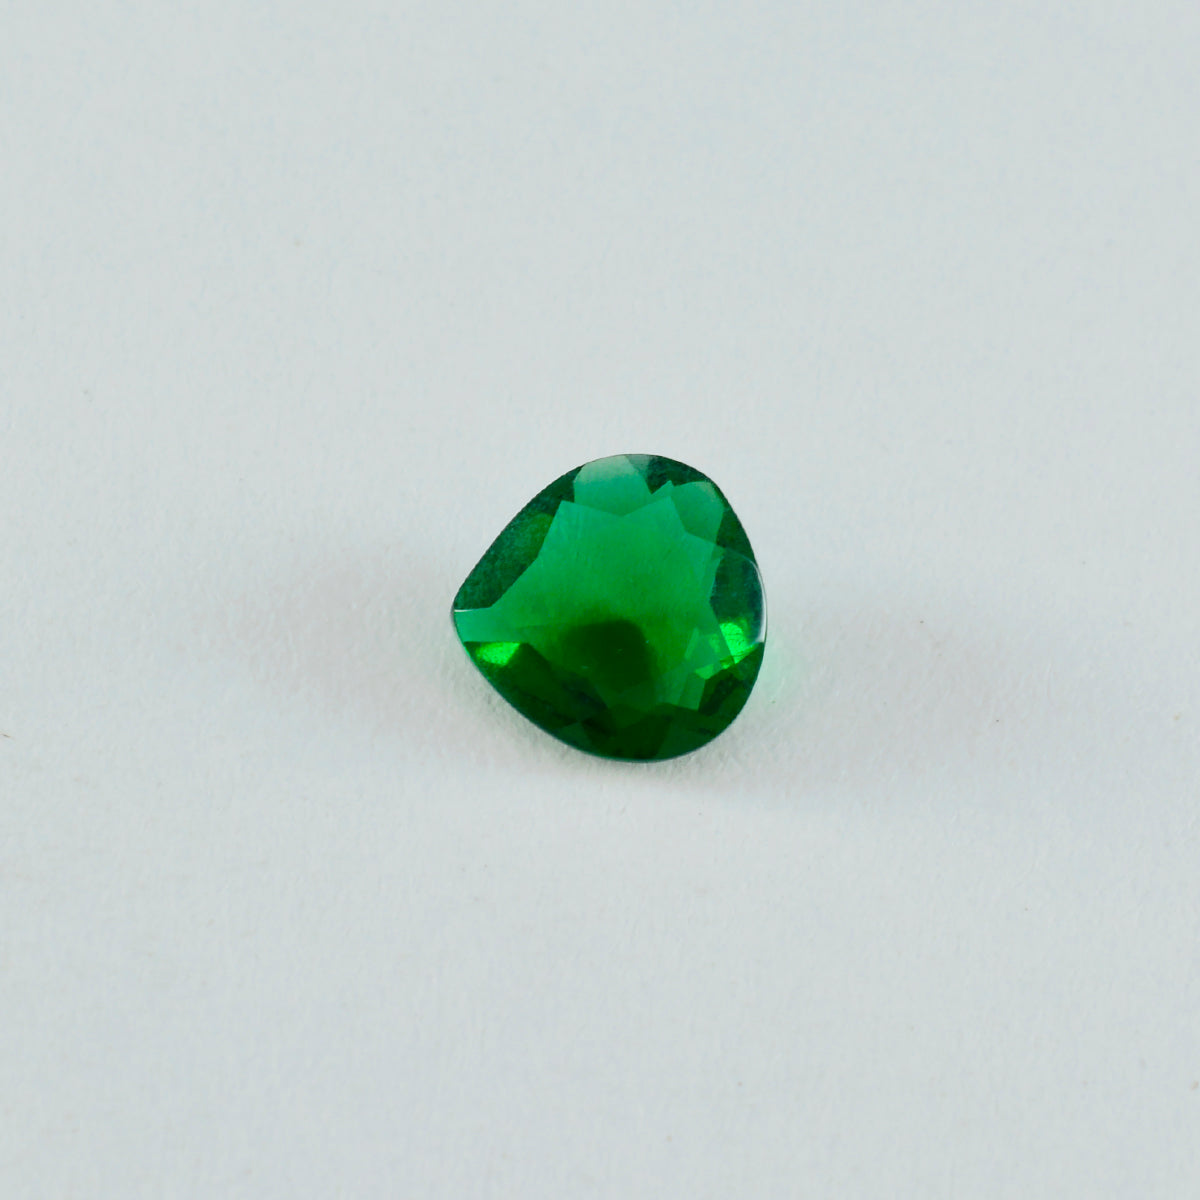 riyogems 1pc グリーン エメラルド CZ ファセット 9x9 mm ハート形状の素晴らしい品質の宝石